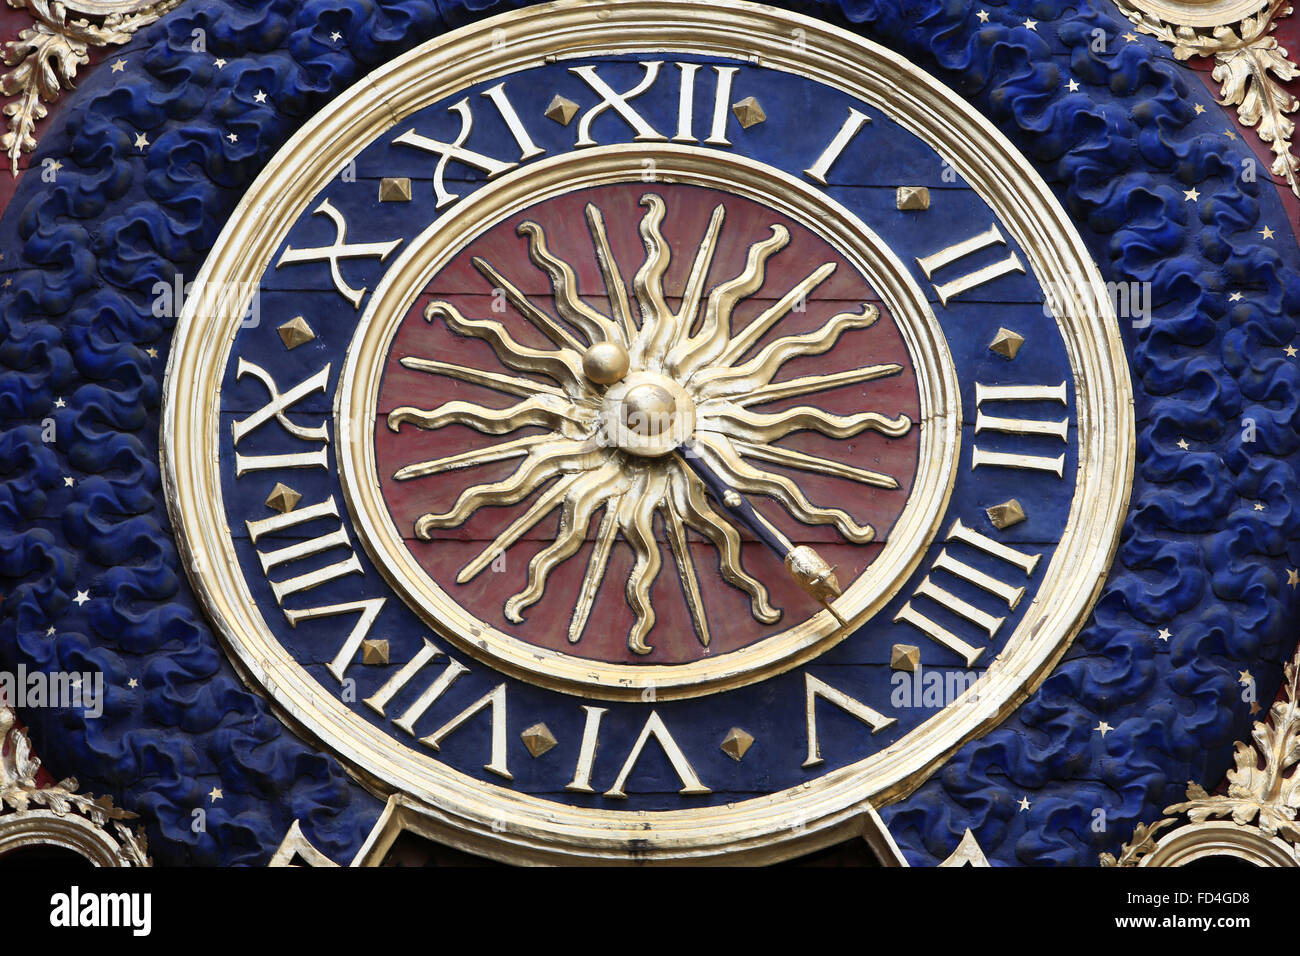 Gros Horloge, xive siècle, l'horloge astronomique à Rouen. Banque D'Images